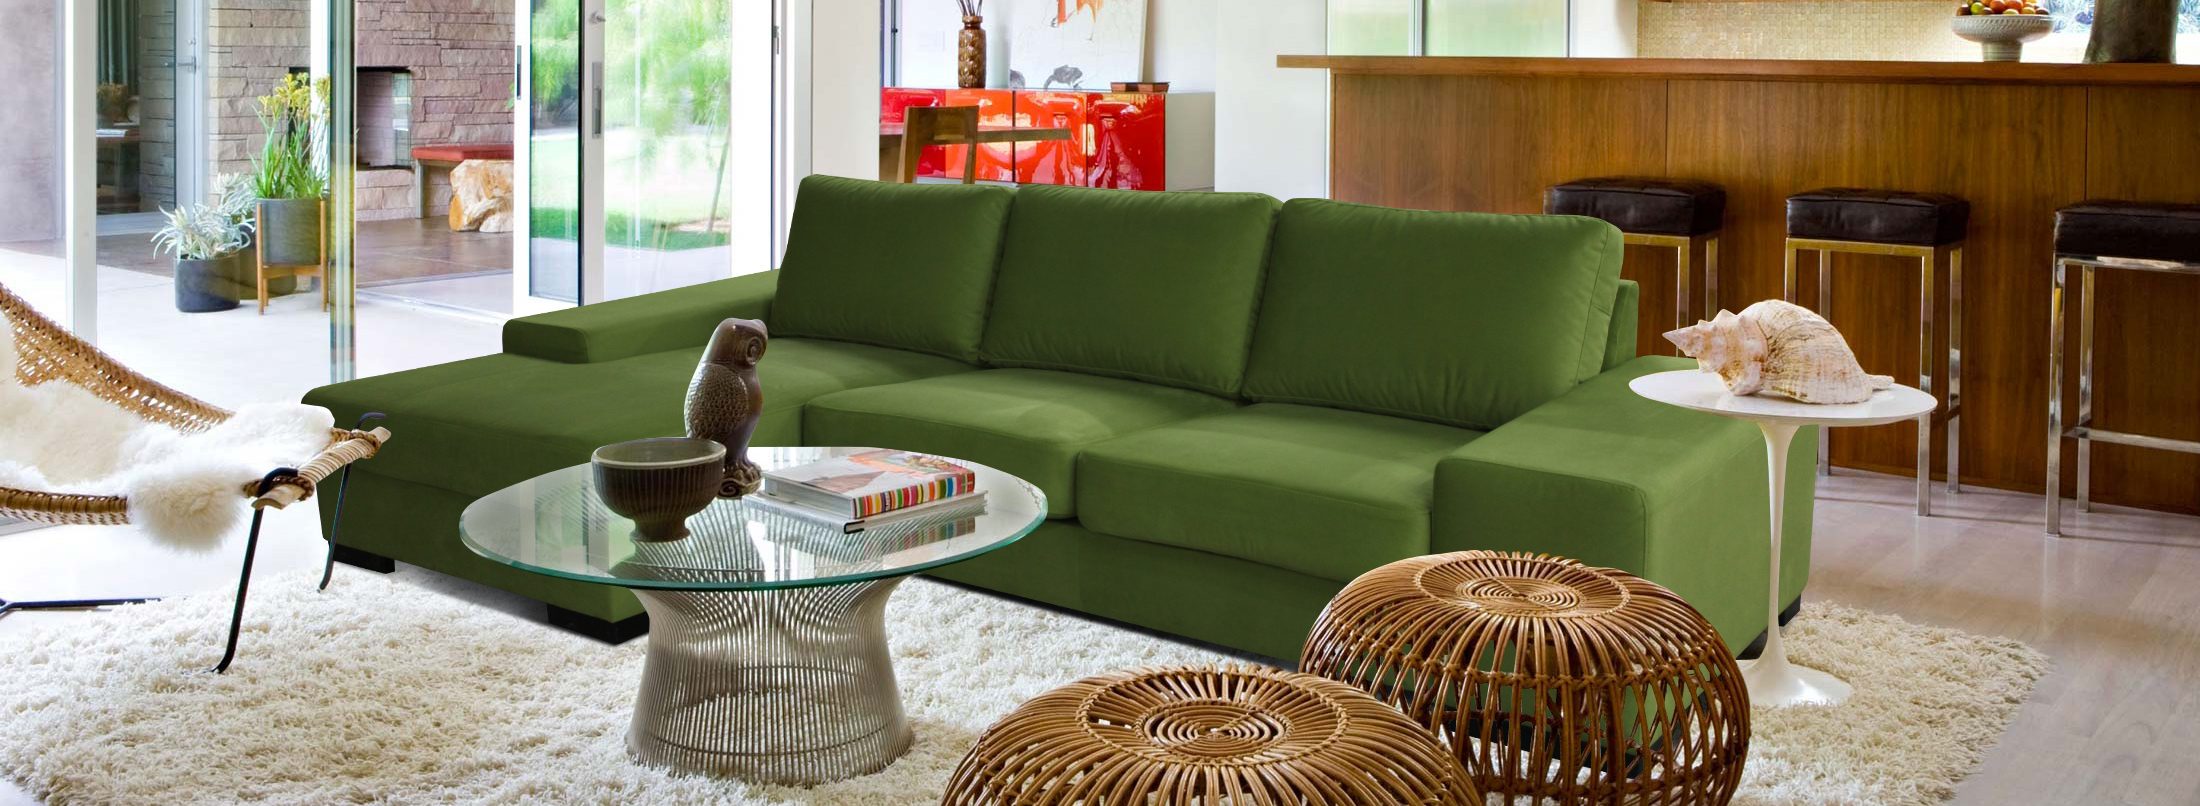 Журнальний столик біля дивана чи крісла може бути як центральним елементом декору приміщення, так і допоміжним доповненням до м'яких меблів